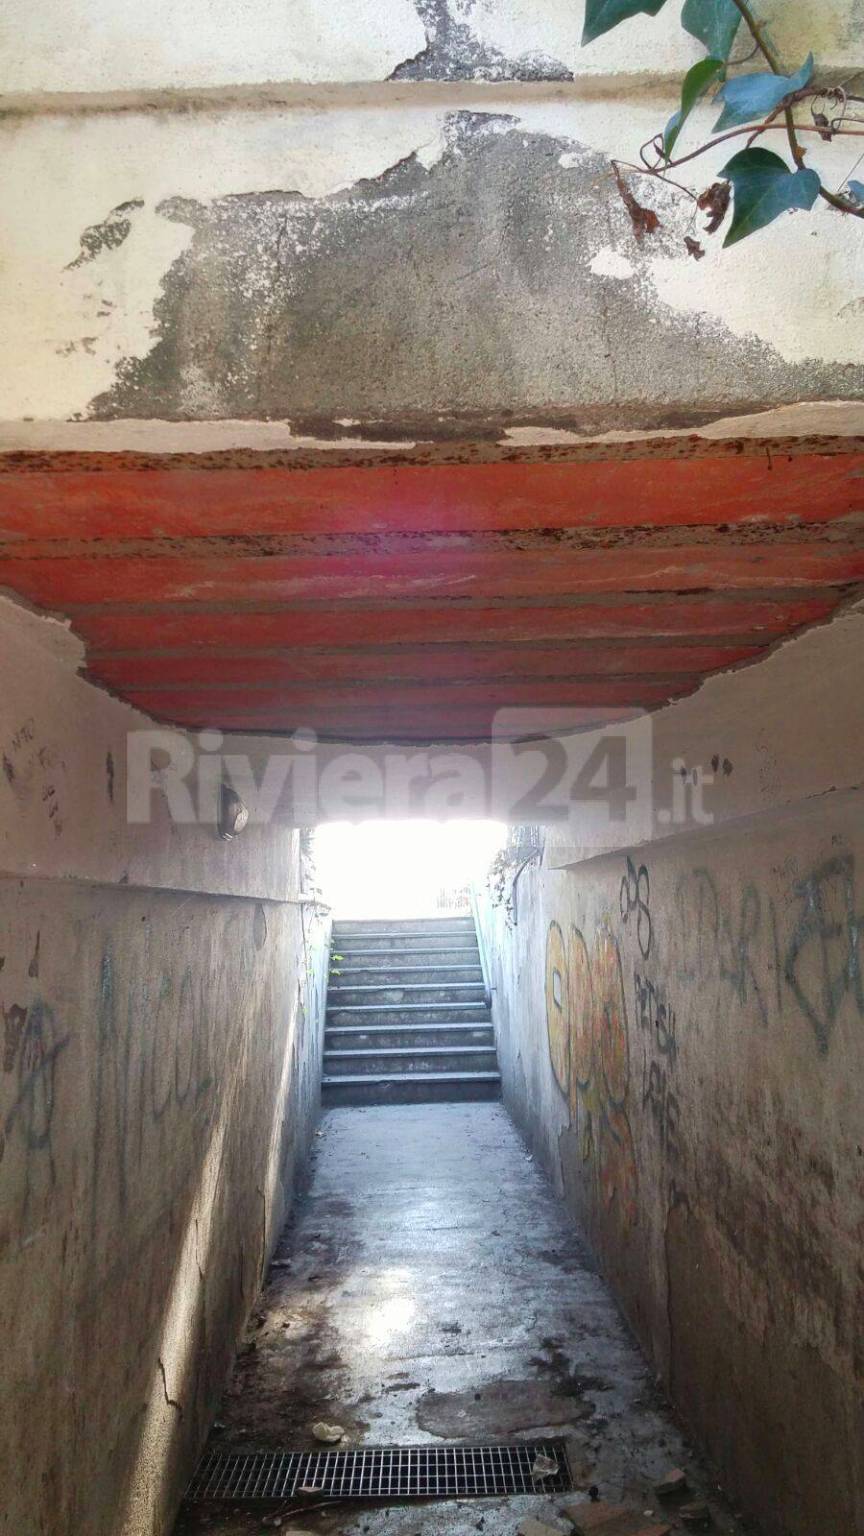 riviera24 - Sanremo, crolla il soffitto di un passaggio sotto la ciclabile